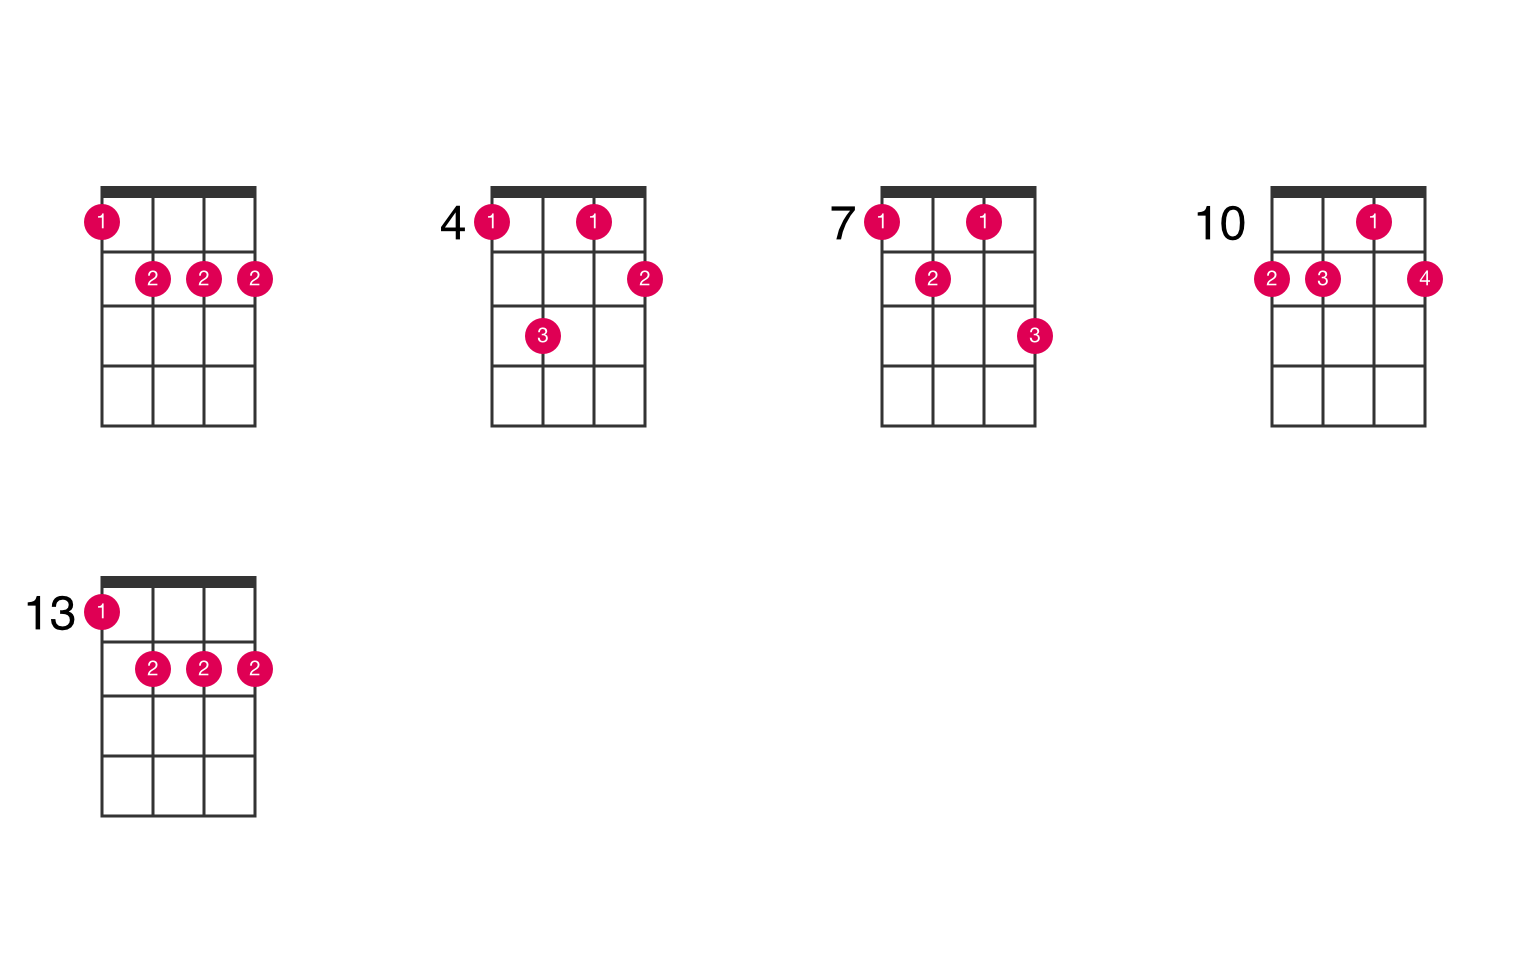  B  minor  major 6 ukulele  chord  UkeLib Chords 